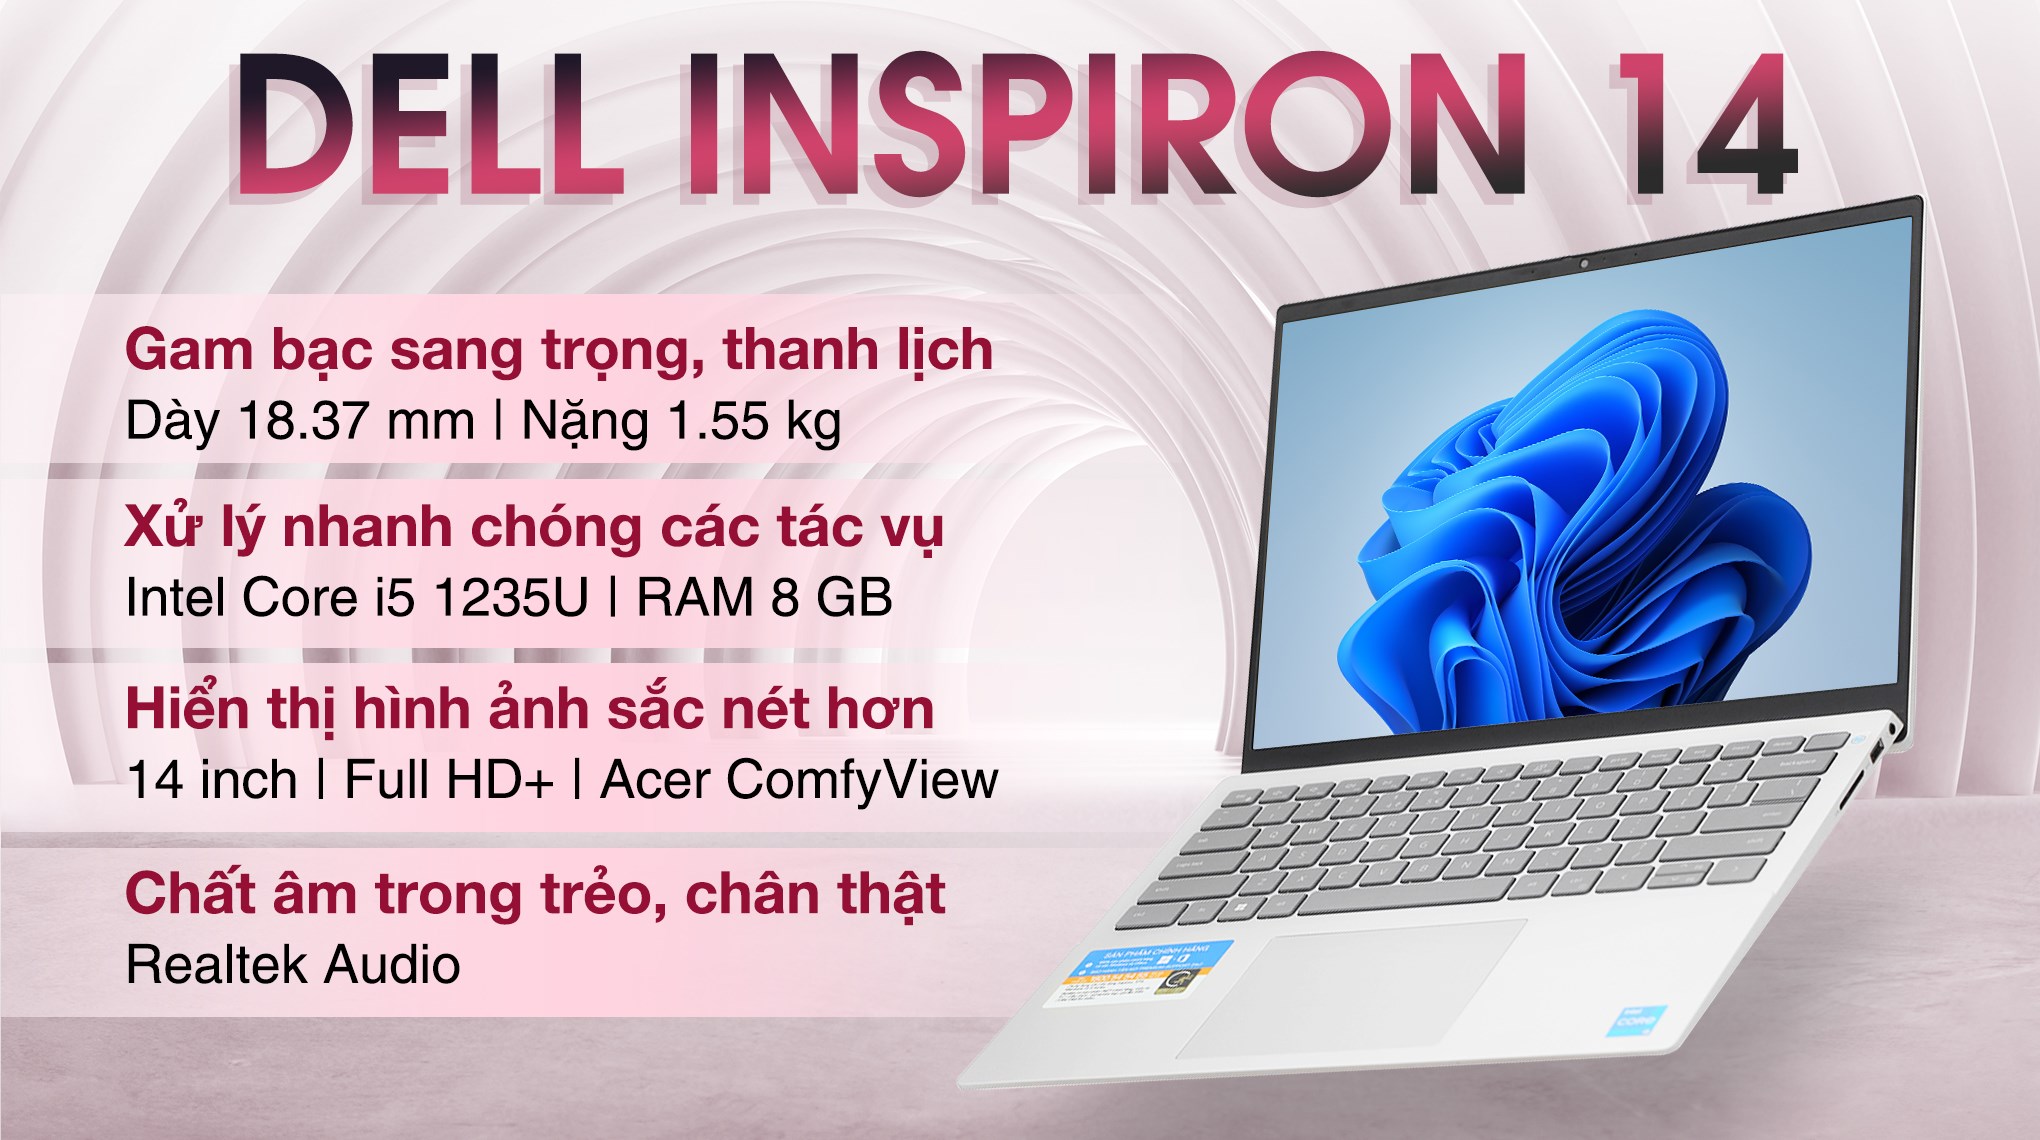 Laptop Dell Inspiron 14 với thiết kế sang trọng và hiệu năng tuyệt vời sẽ đem lại trải nghiệm sử dụng tốt nhất cho bạn. Hãy xem hình ảnh để khám phá những tính năng và ưu điểm của sản phẩm này.